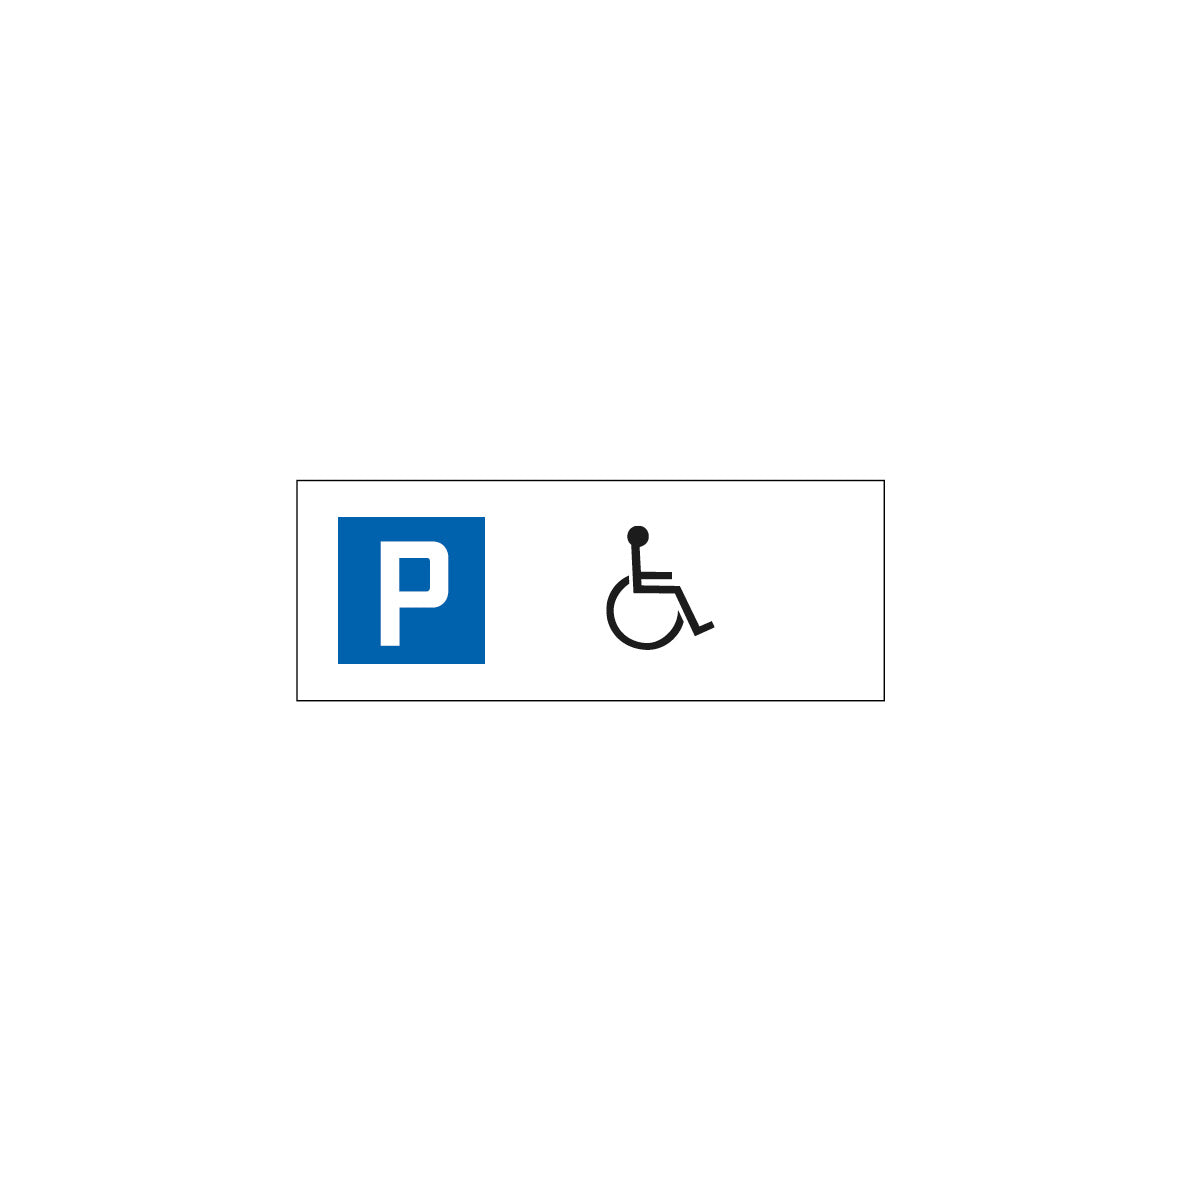 Parkplatzschild 7.P, 7.P-009, R1, 4.17, Rollstuhl